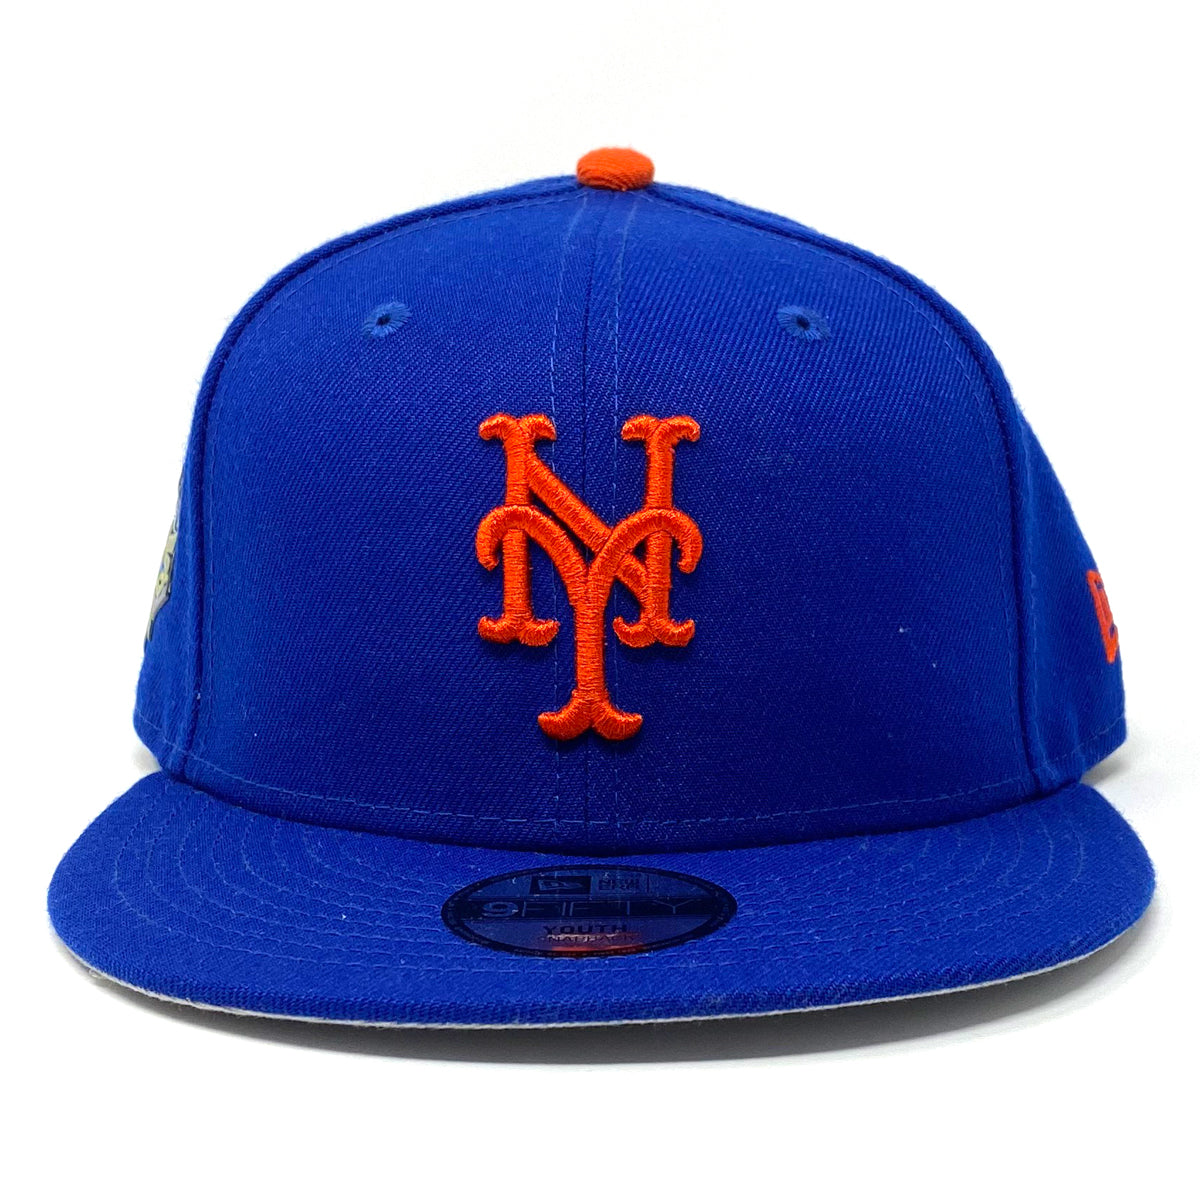 NY Mets LG Side Patch SnapBack Hat